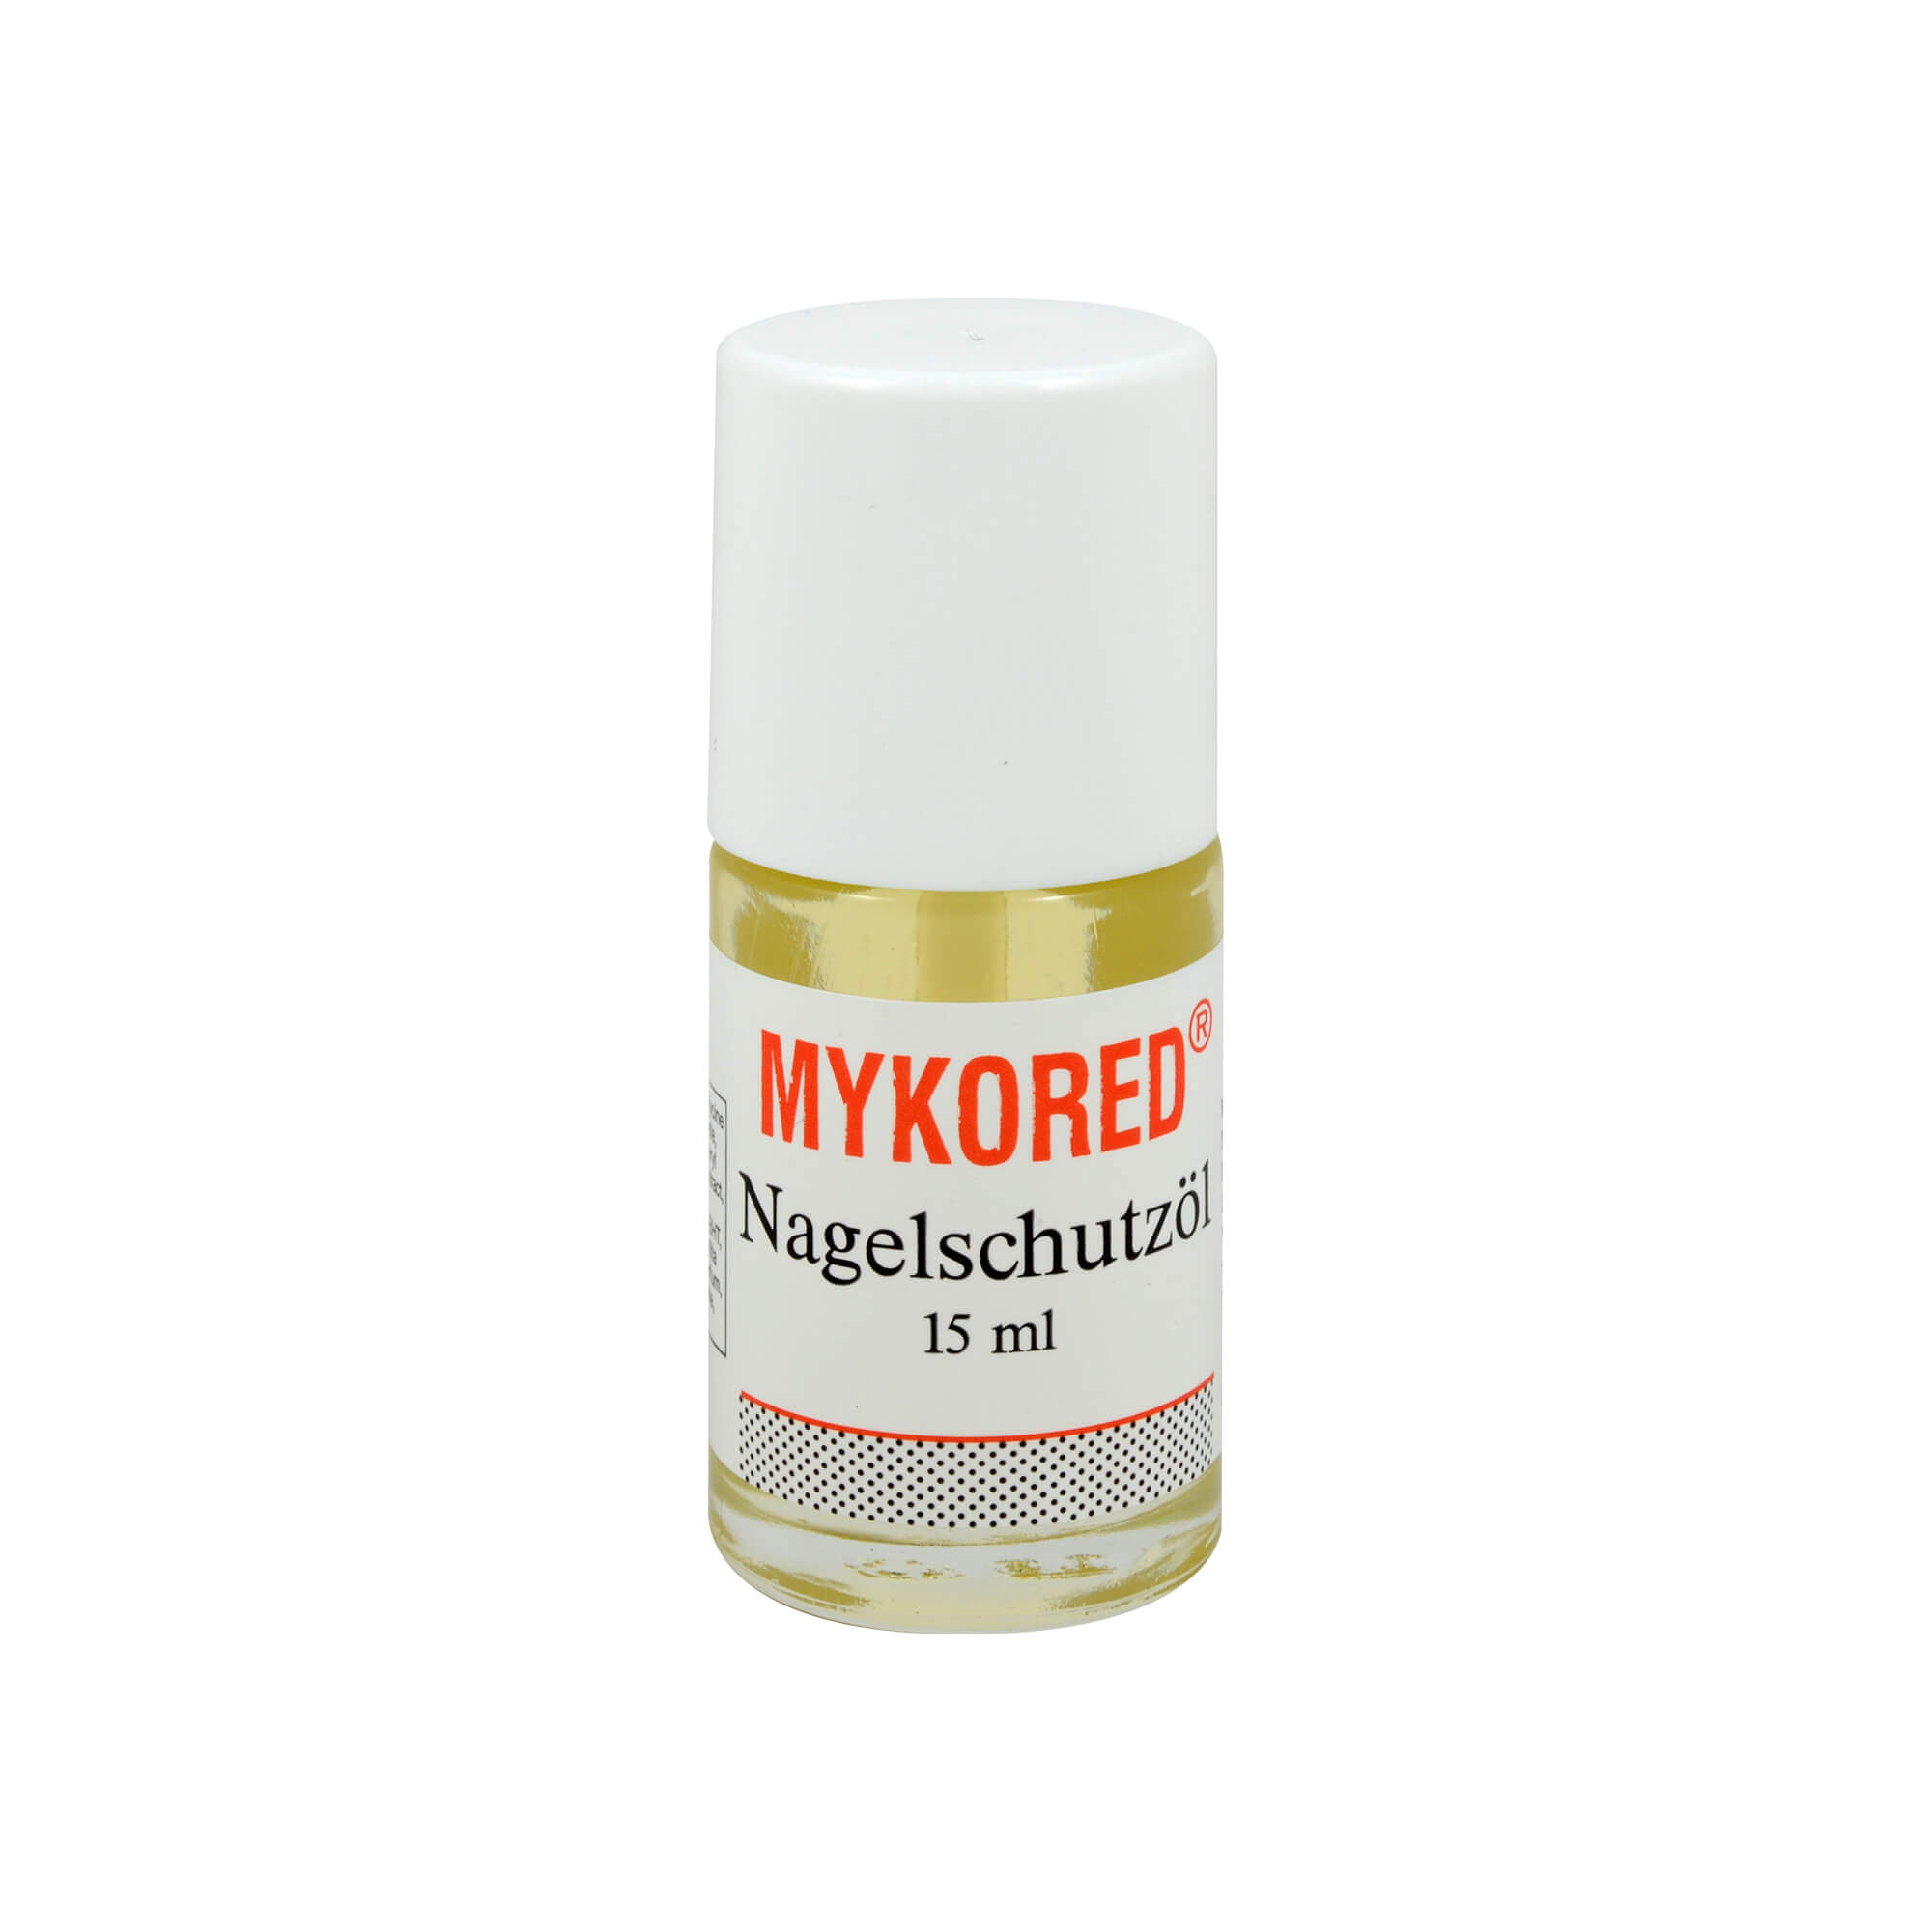 Mykored Nagelschutzöl versorgt Haut, Nägel und Nagelhaut mit Feuchtigkeit und Vitaminen.